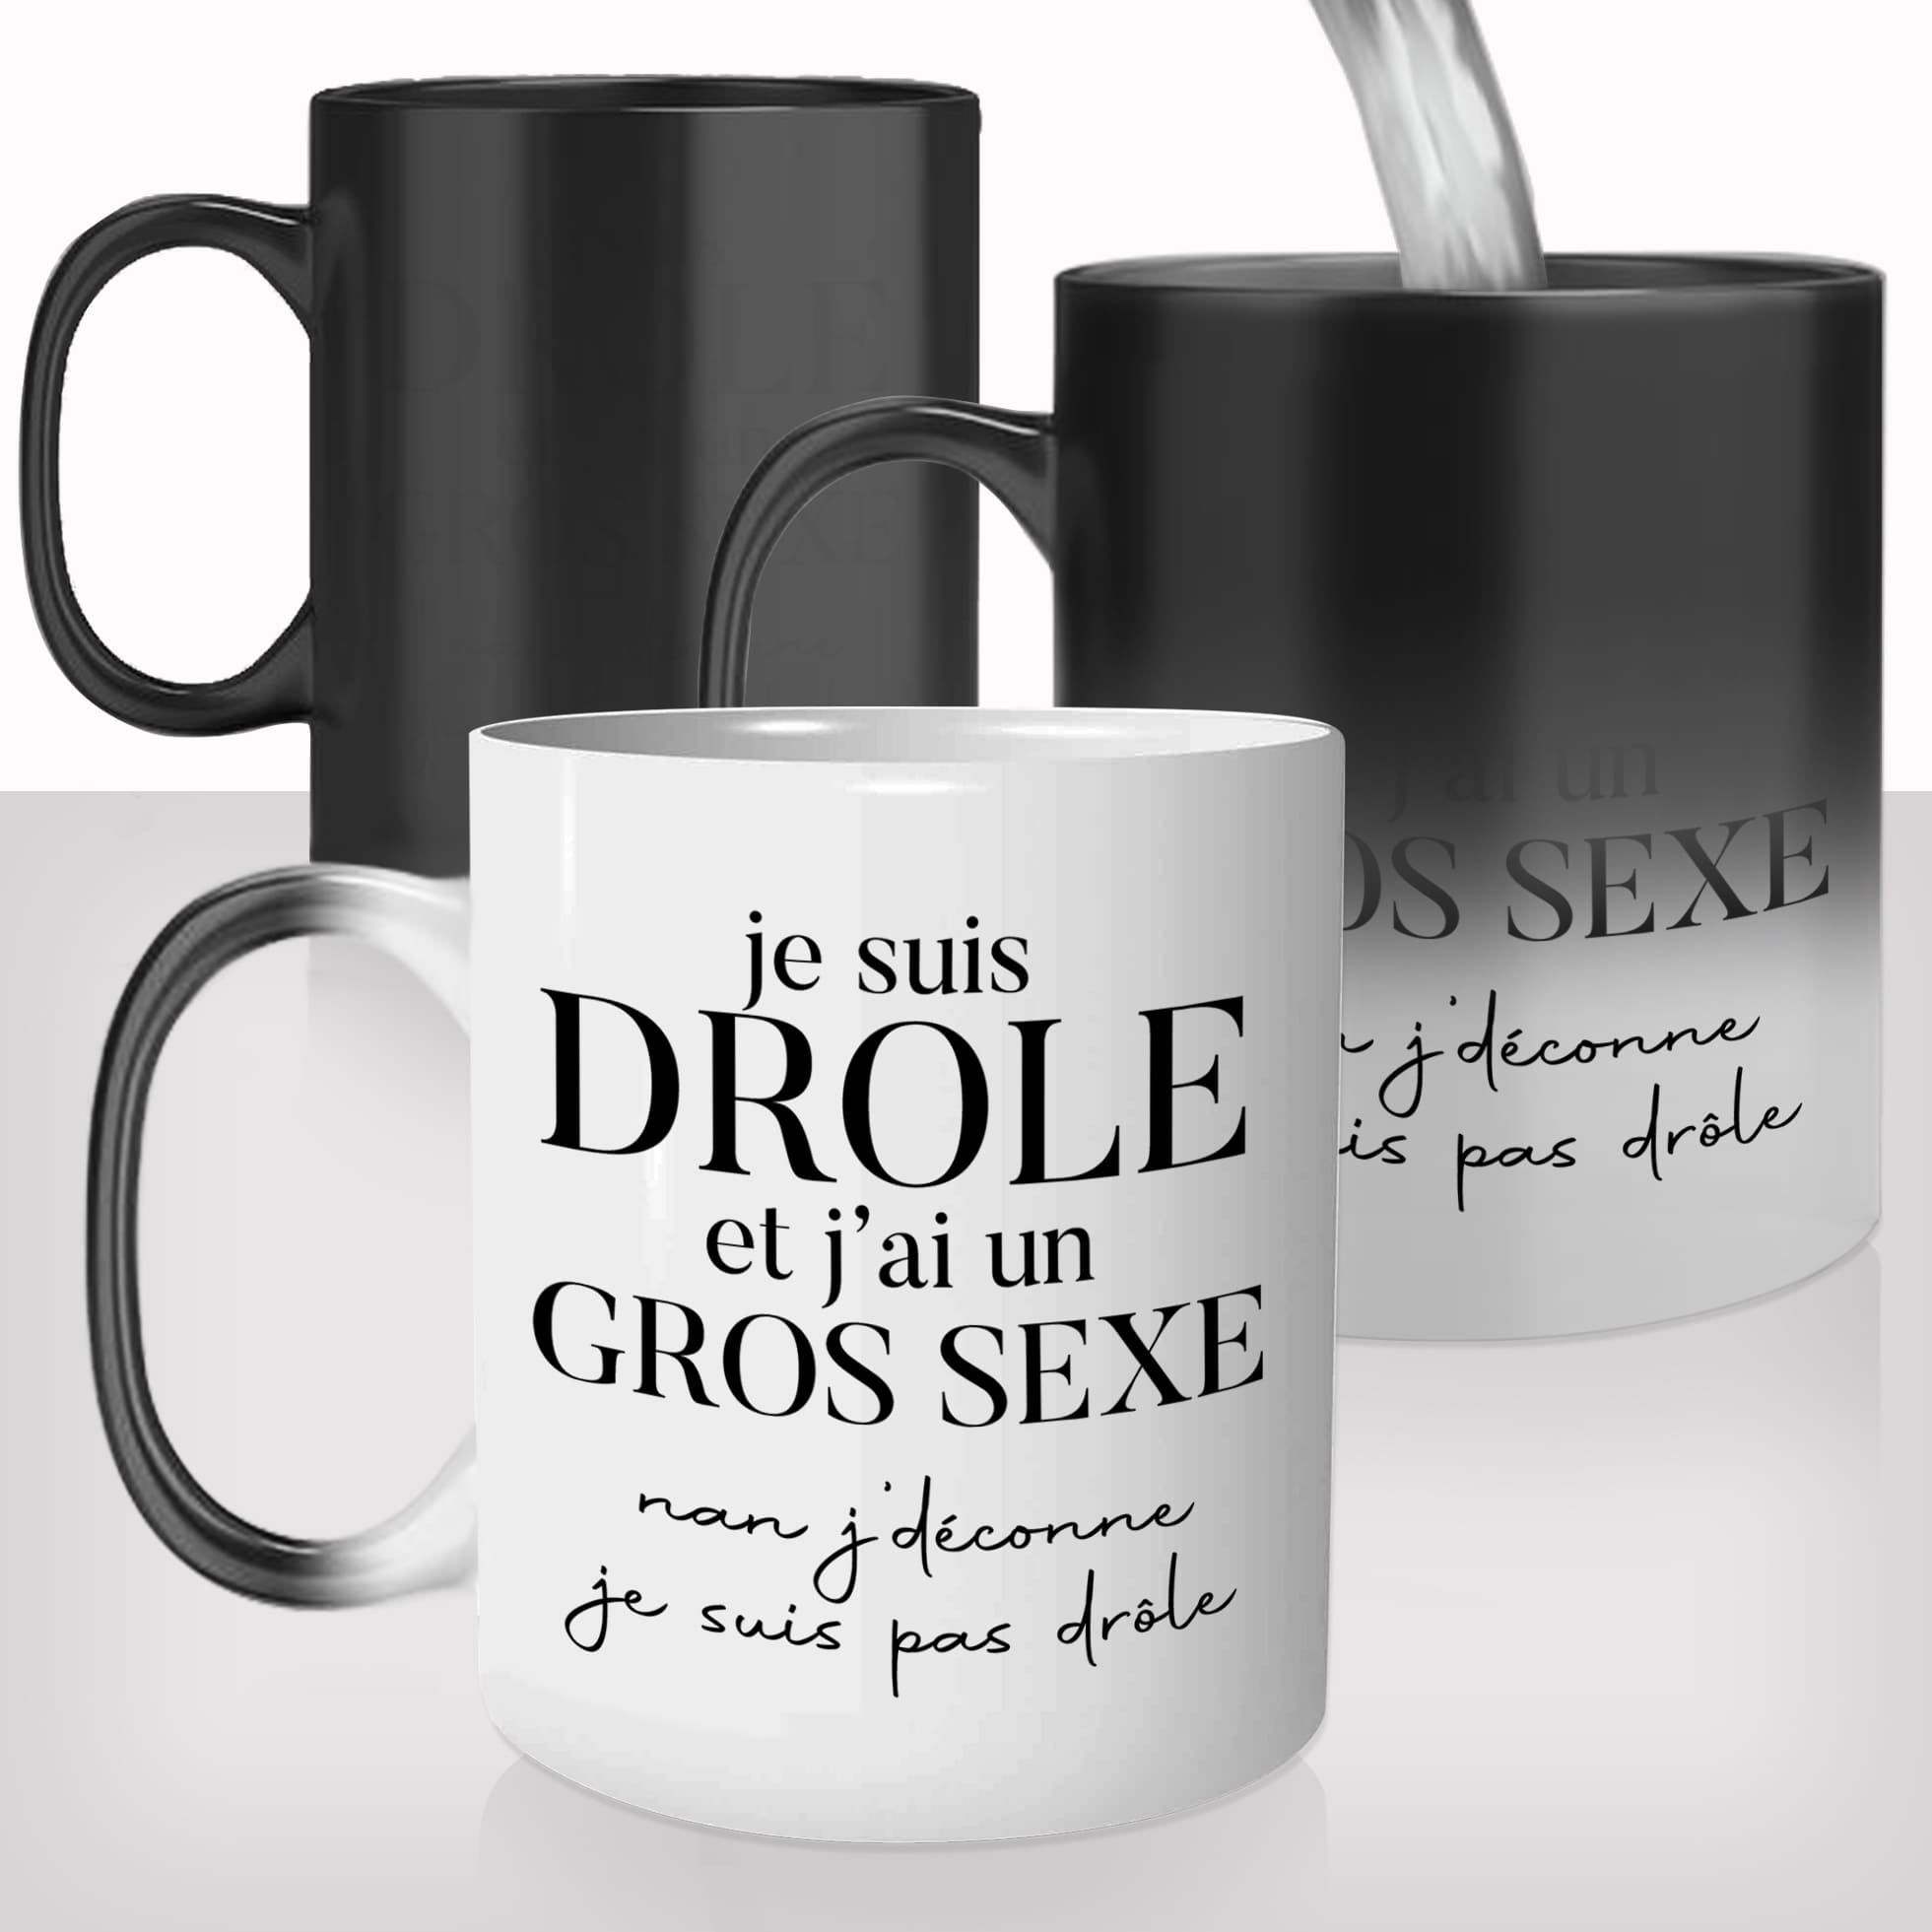 mug-tasse-magique-thermique-thermoreactif-personnalisé-personnalisable-je-suis-drole-gros-sexe-zizi-penis-homme-idée-cadeau-original-café-thé